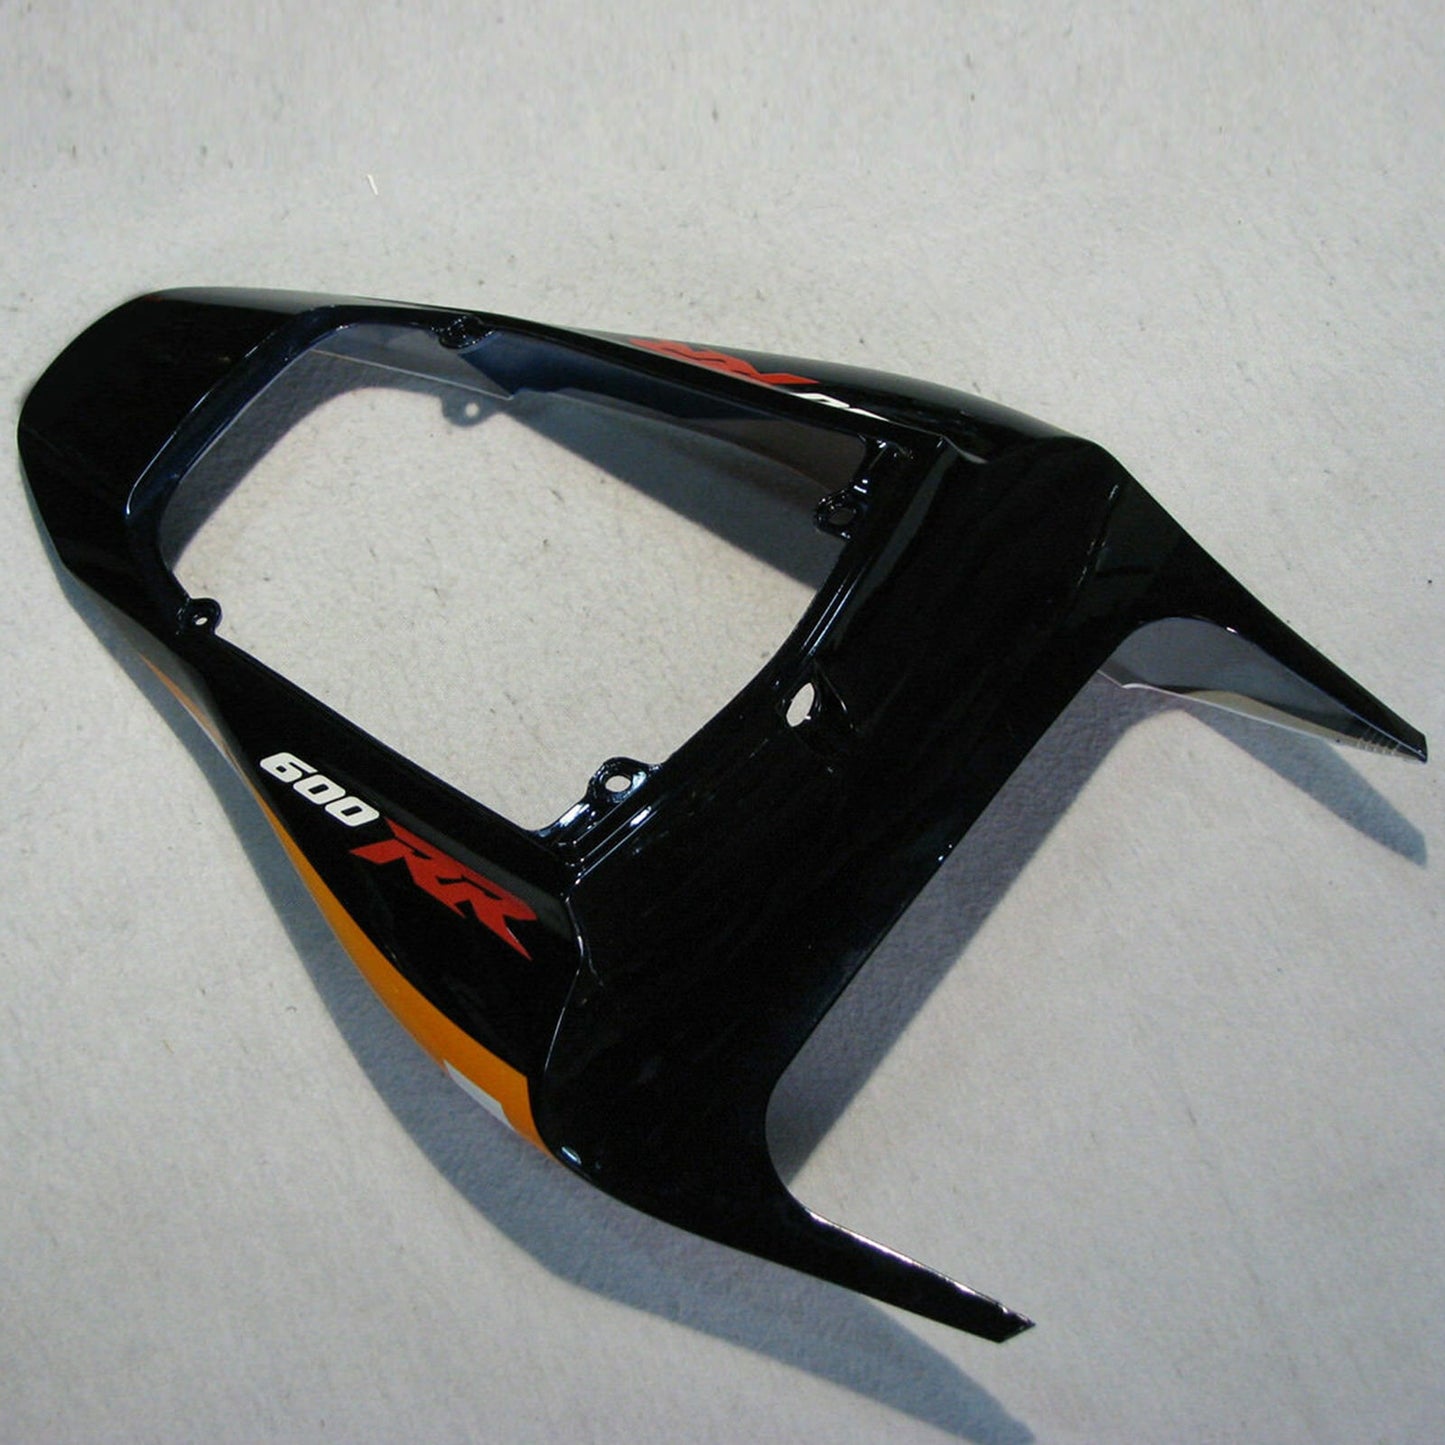 2009-2012 Honda CBR600 RR F5 Amotopart Orange Black ABS Fairing Bodywork Kit #21